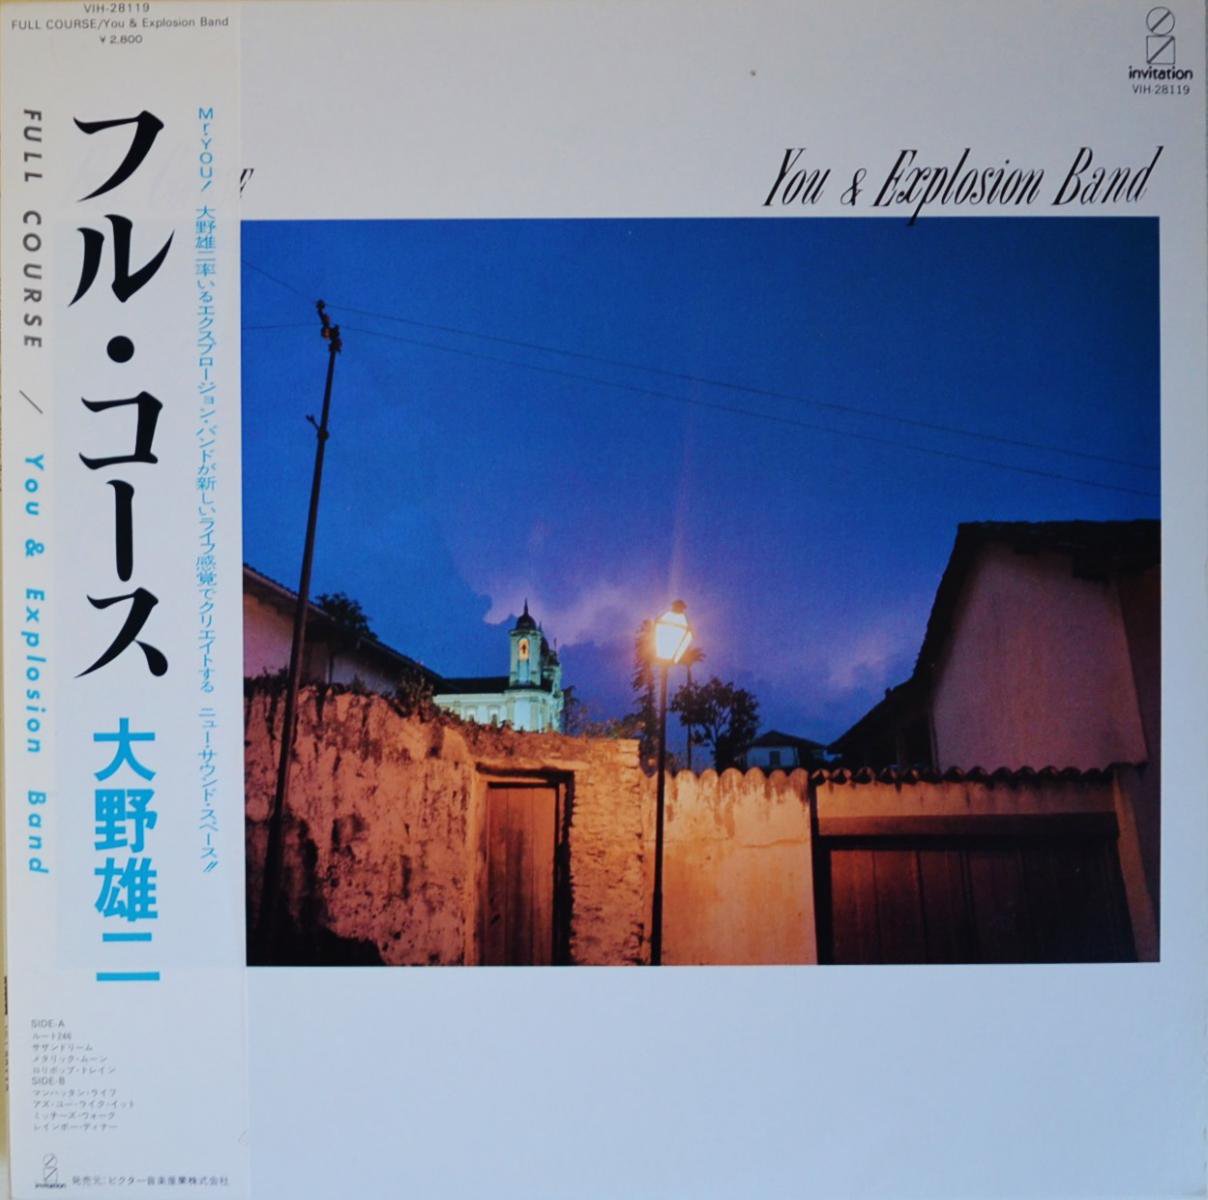 大野雄二 YUJI OHNO (YOU & THE EXPLOSION BAND) / フル・コース FULL COURSE (LP)